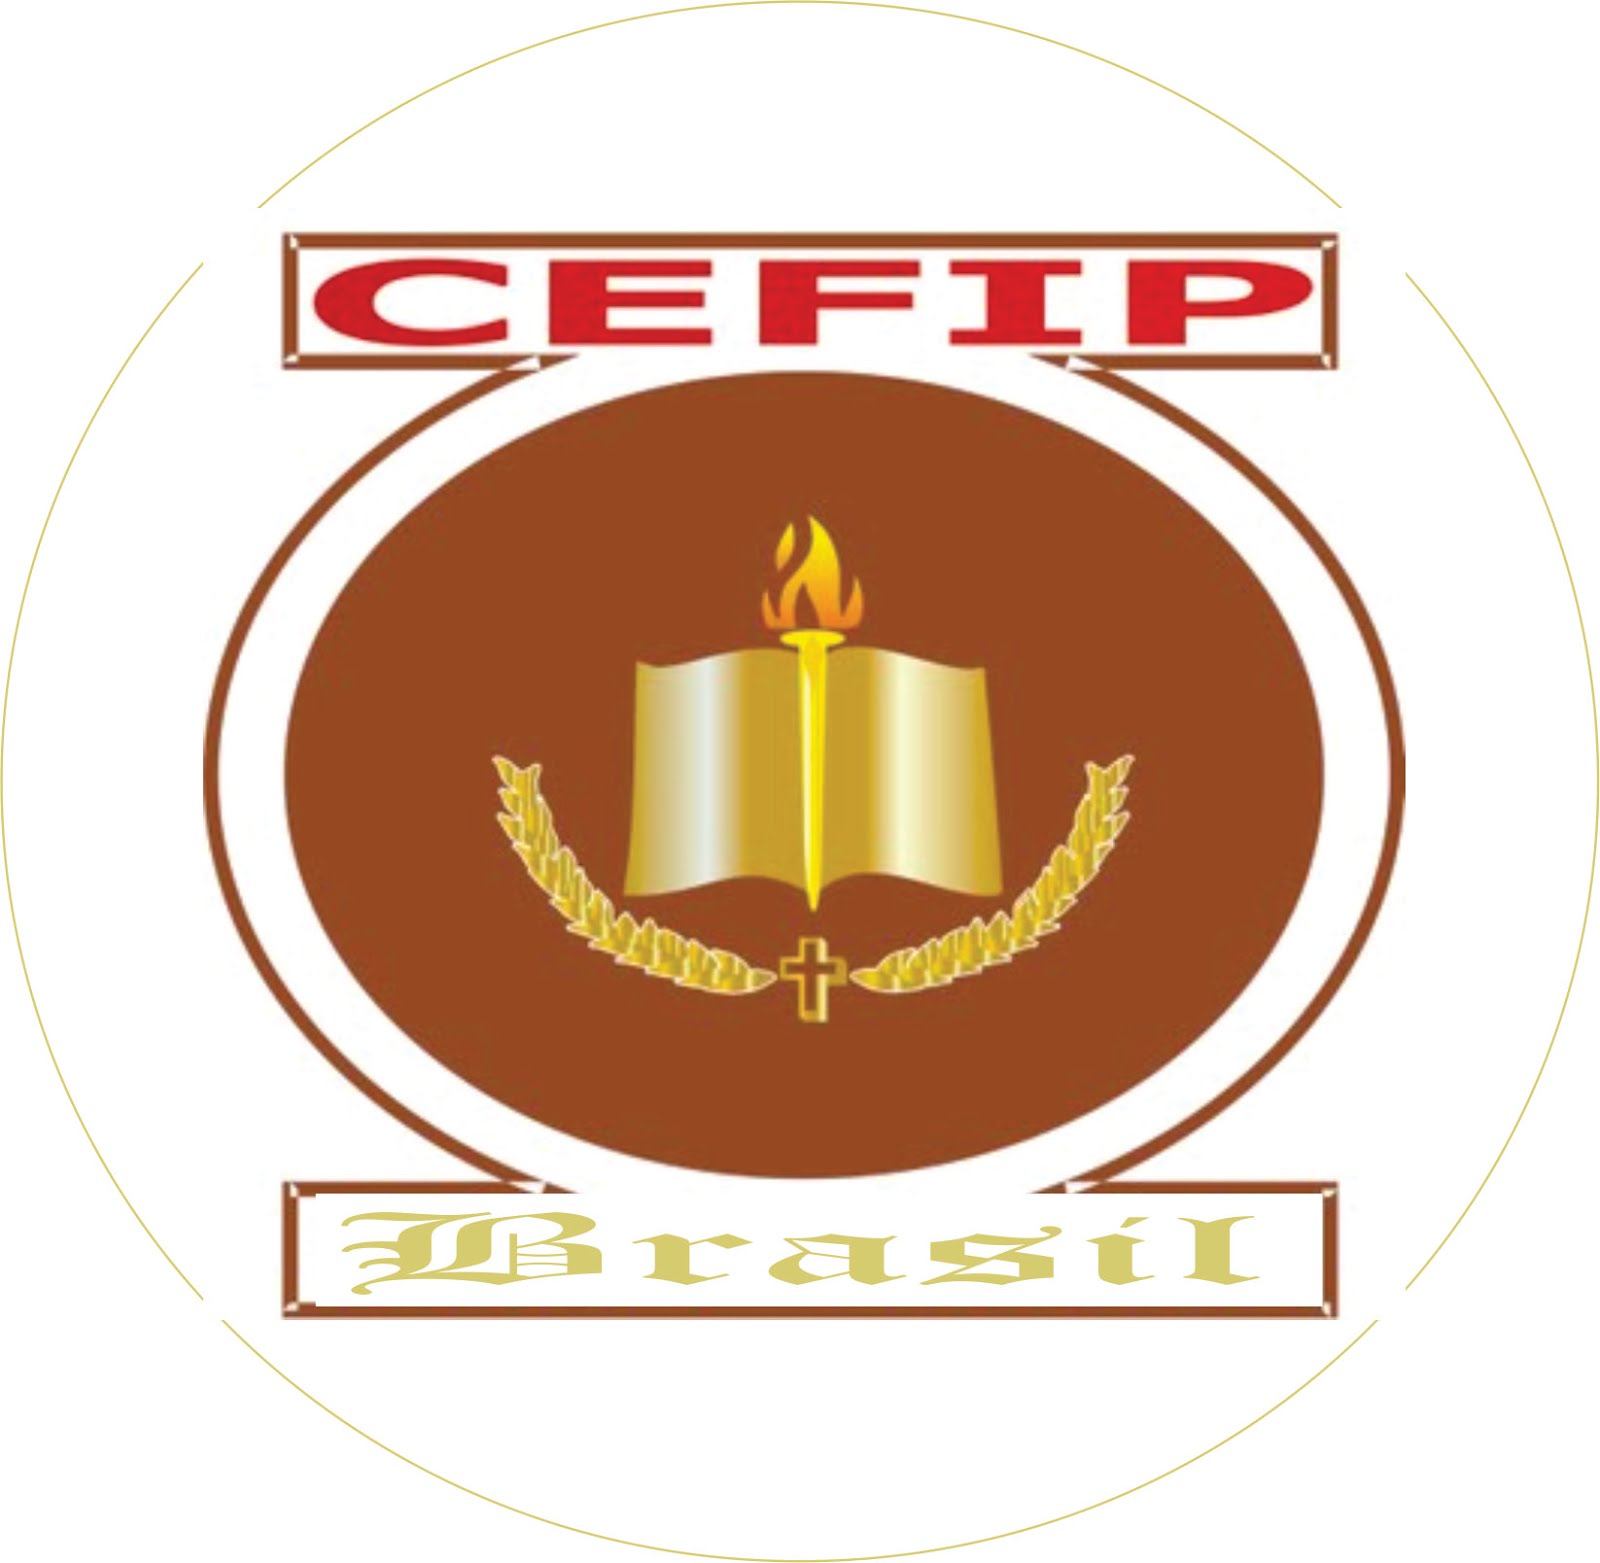 CEFIP-Brasil